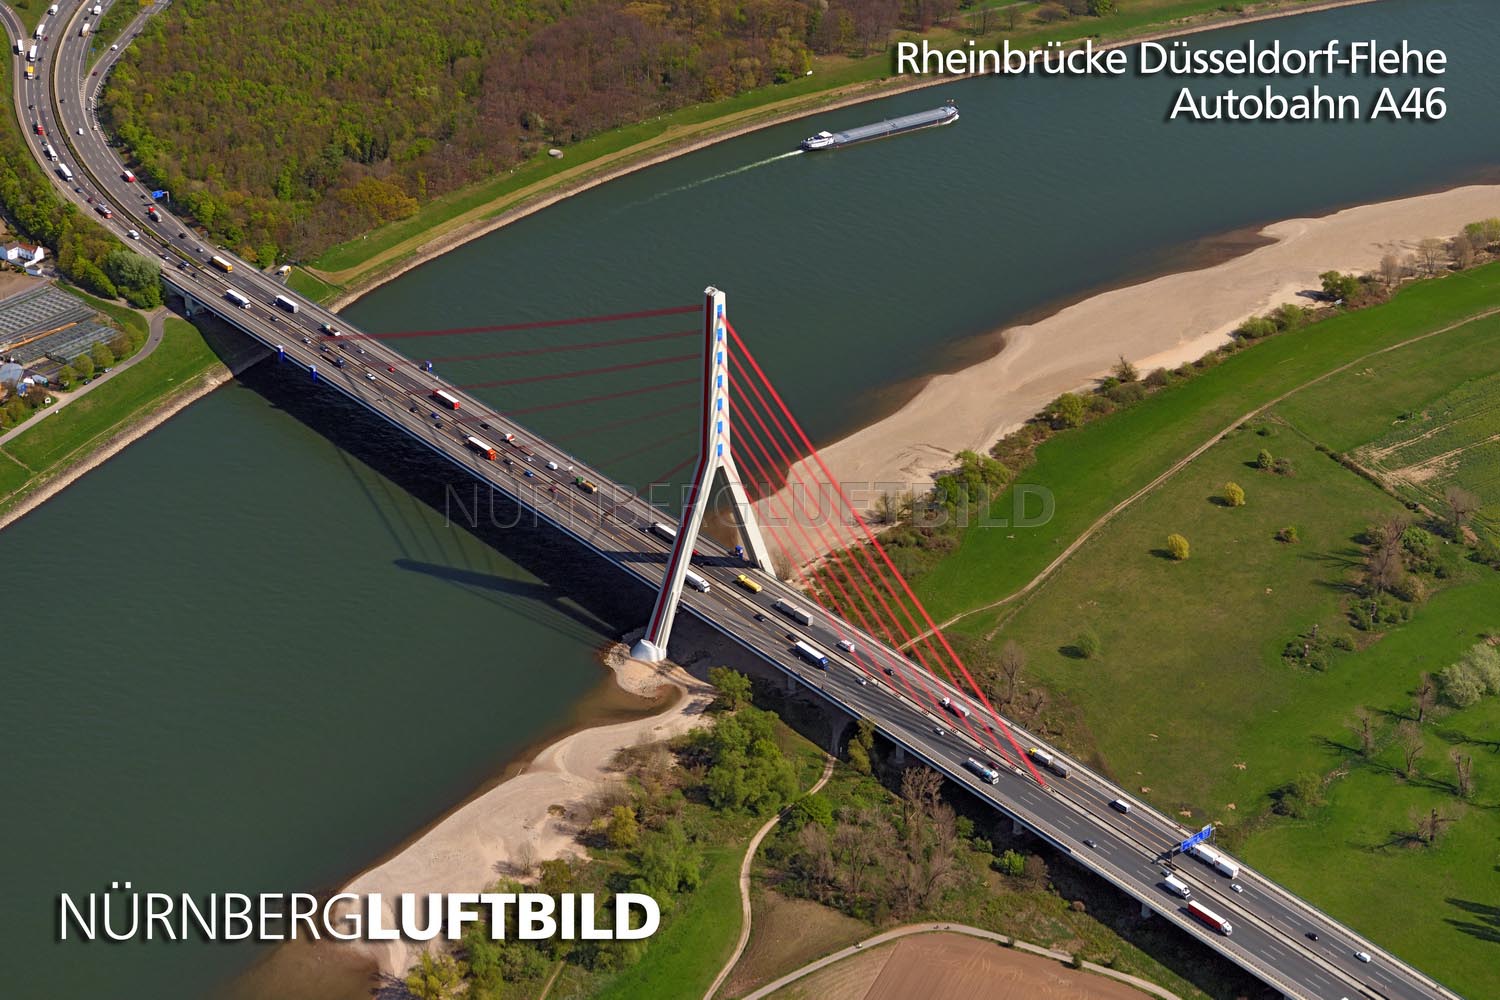 Rheinbrücke Düsseldorf-Flehe, Autobahn A46